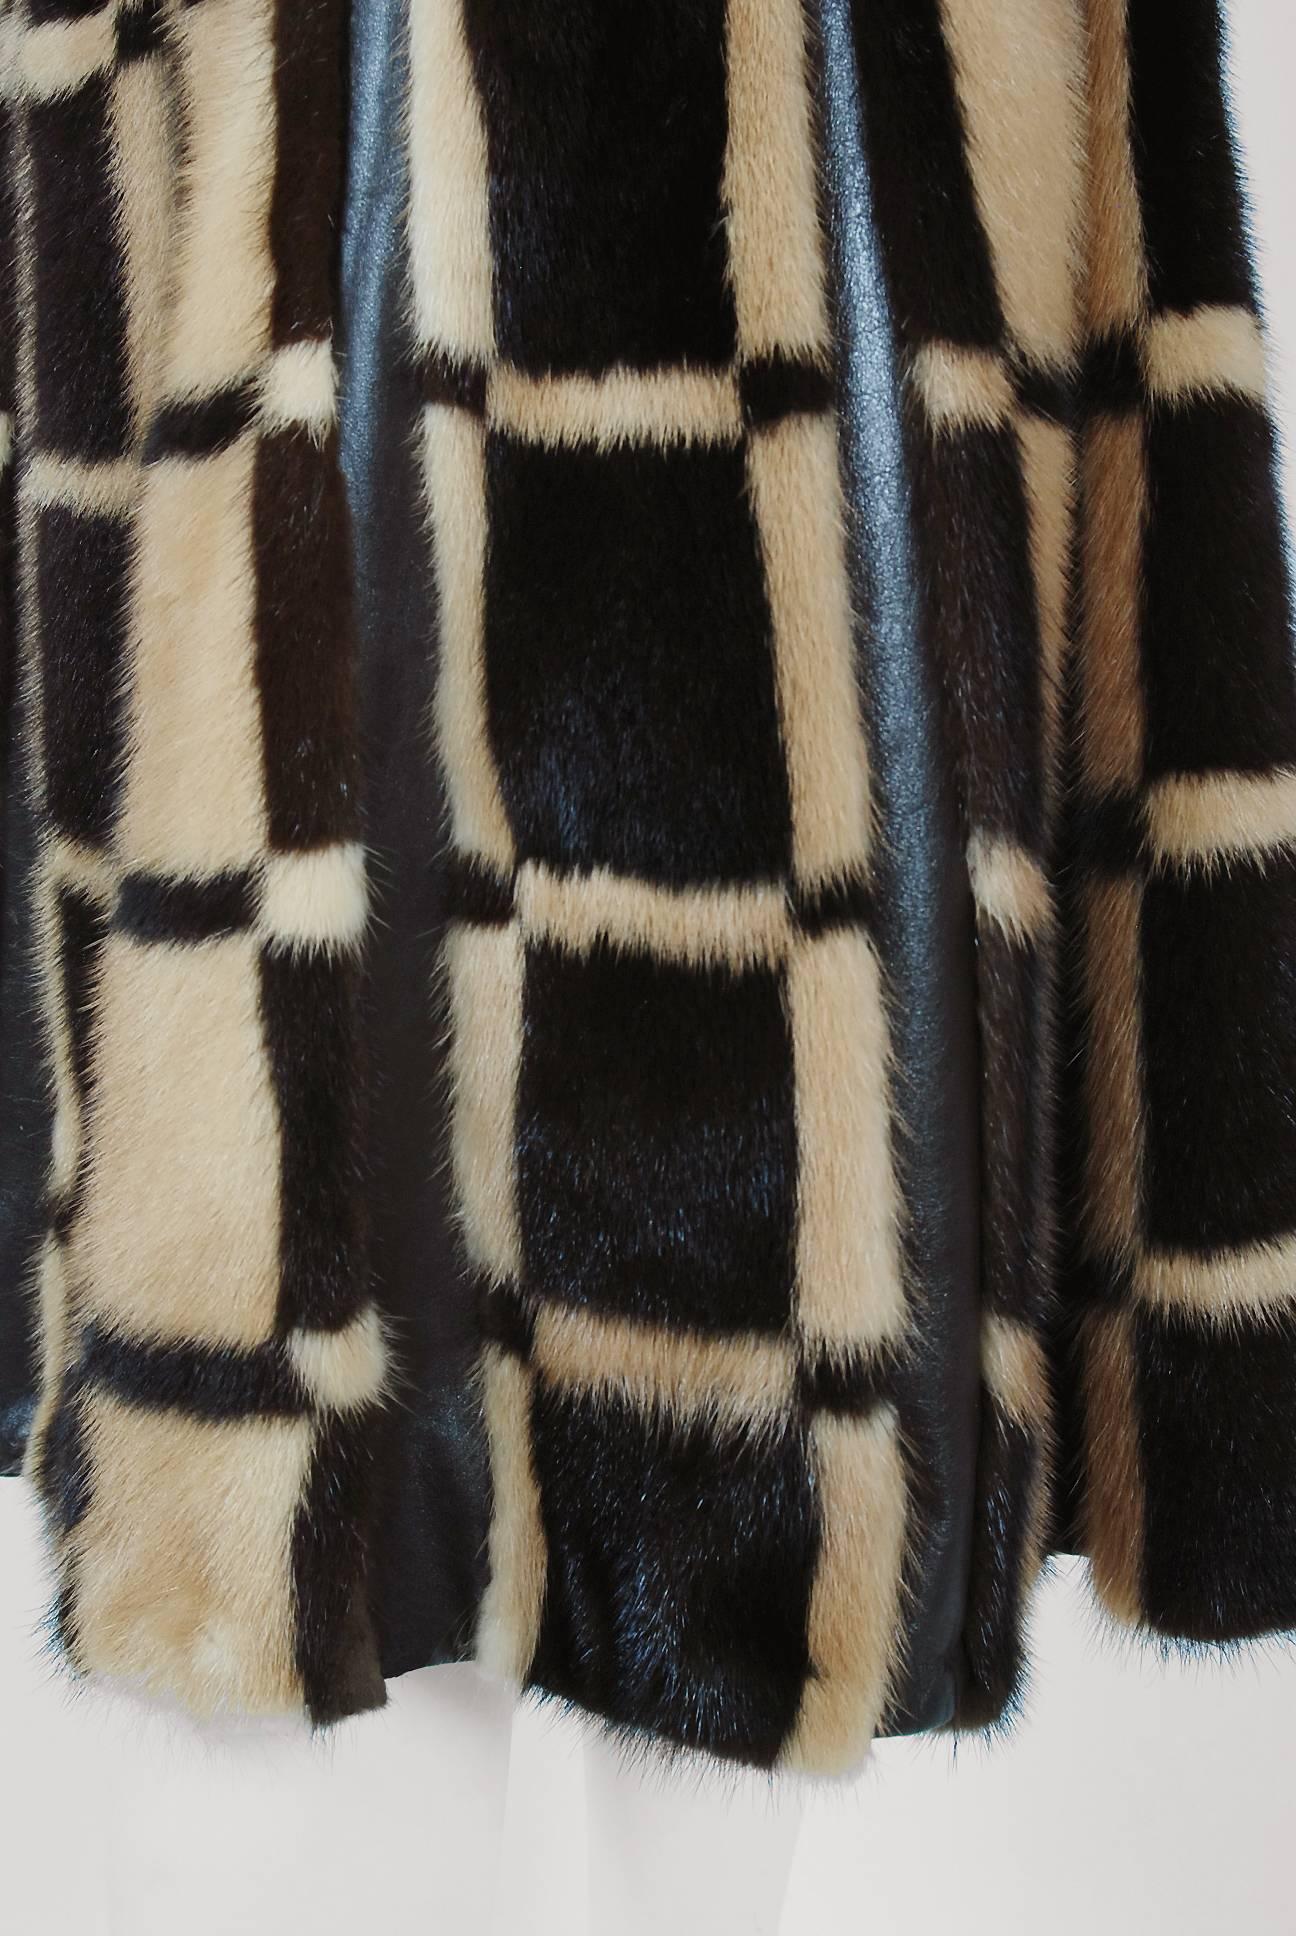 Pierre Cardin Graphic Block Color Mink Fur / Leather Grommet Princess Coat, 1972 1